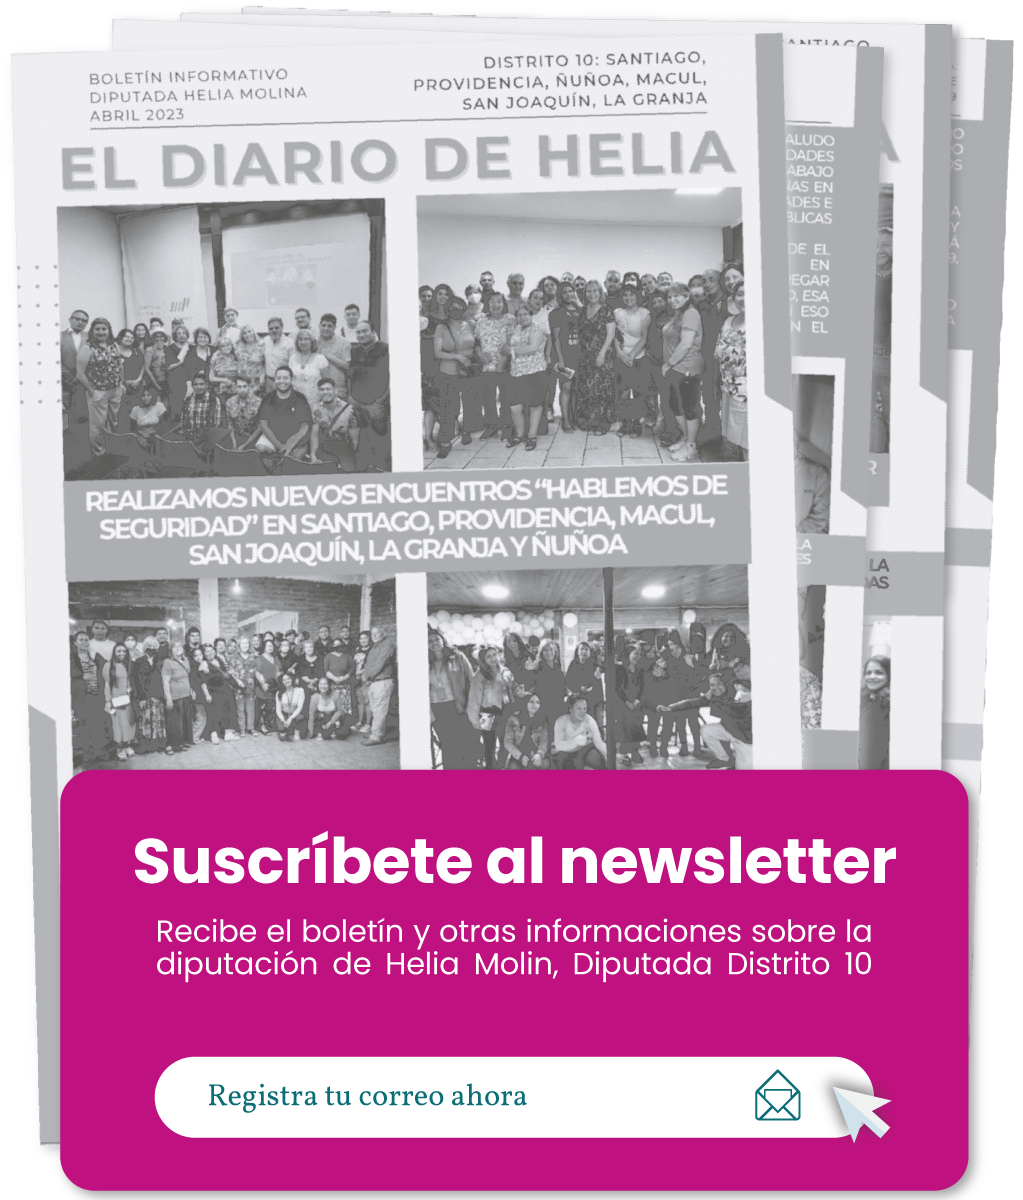 cuadro rosado con letras blancas que dicen Suscríbete al newsletter, sobre una foto en blanco y negro de un periódico